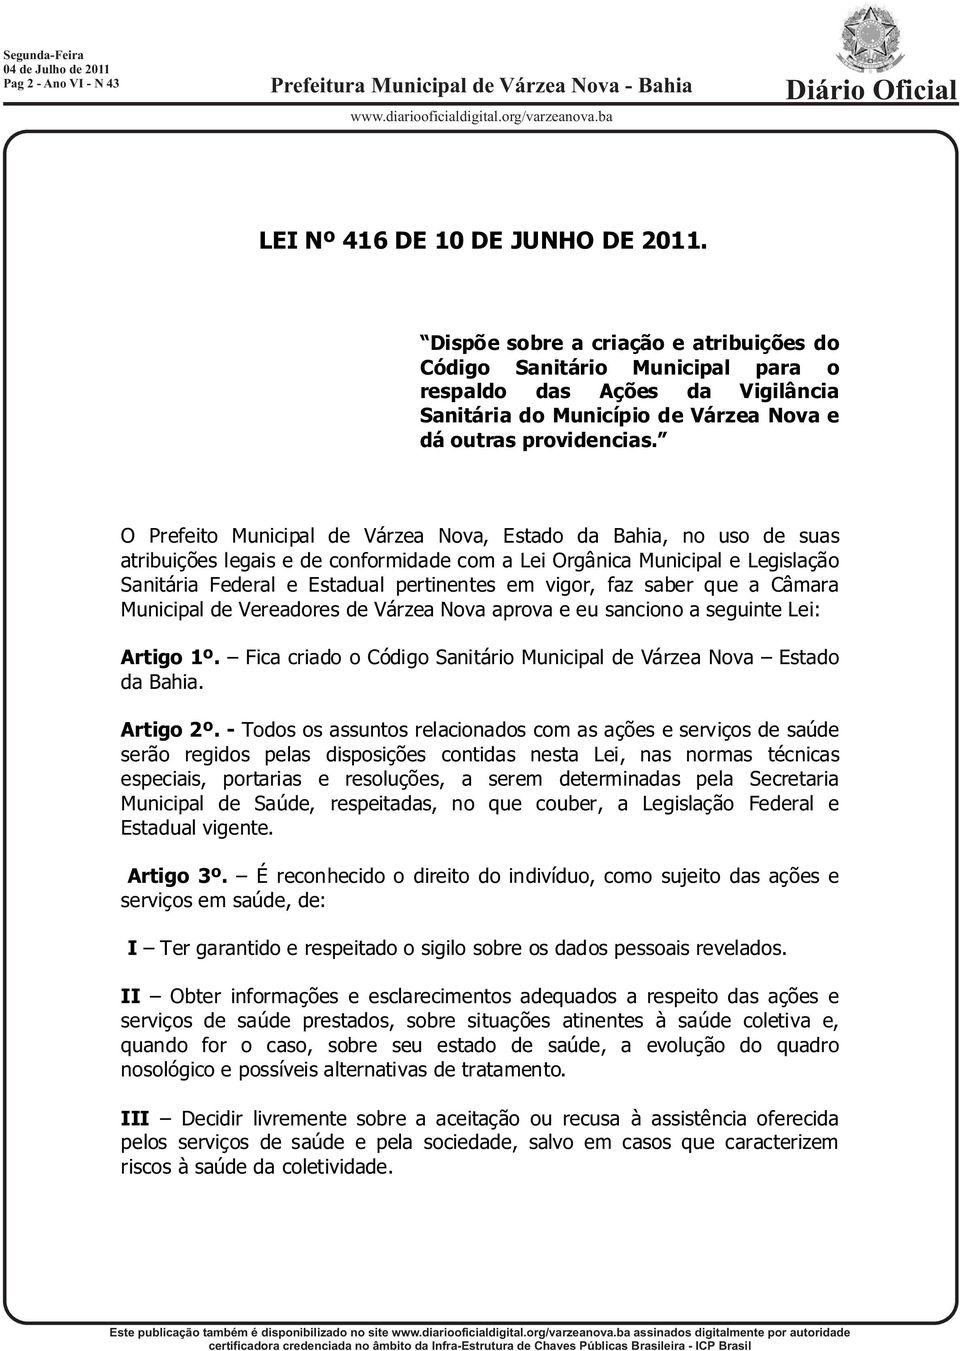 O Prefeito Municipal de Várzea Nova, Estado da Bahia, no uso de suas atribuições legais e de conformidade com a Lei Orgânica Municipal e Legislação Sanitária Federal e Estadual pertinentes em vigor,